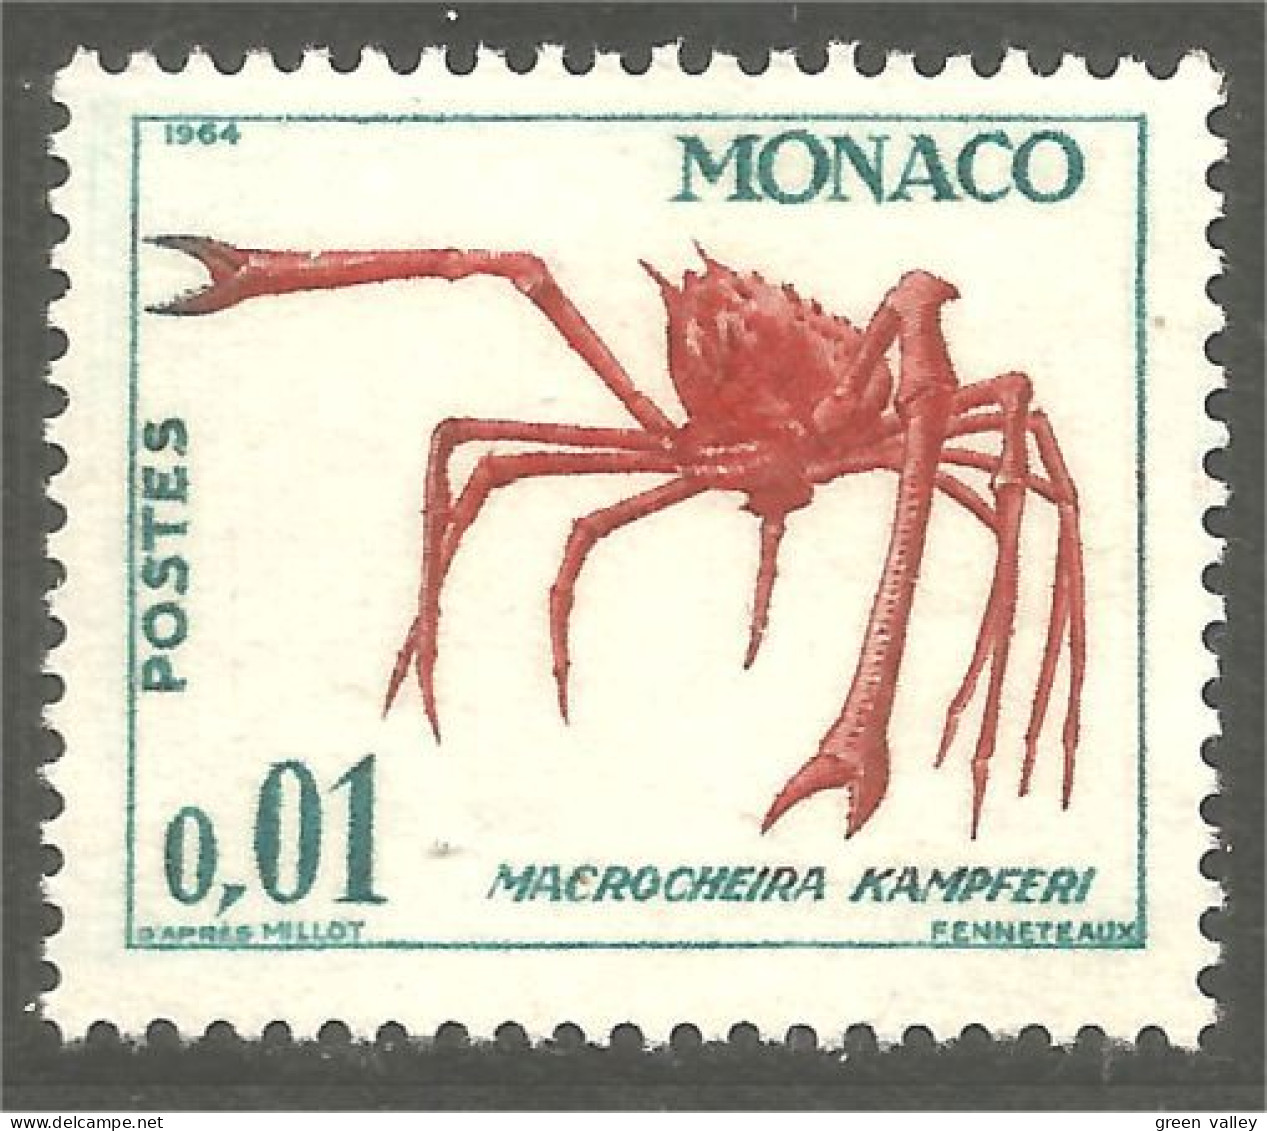 630x Monaco Crabe Crab MNH ** Neuf SC (MON-968) - Schaaldieren